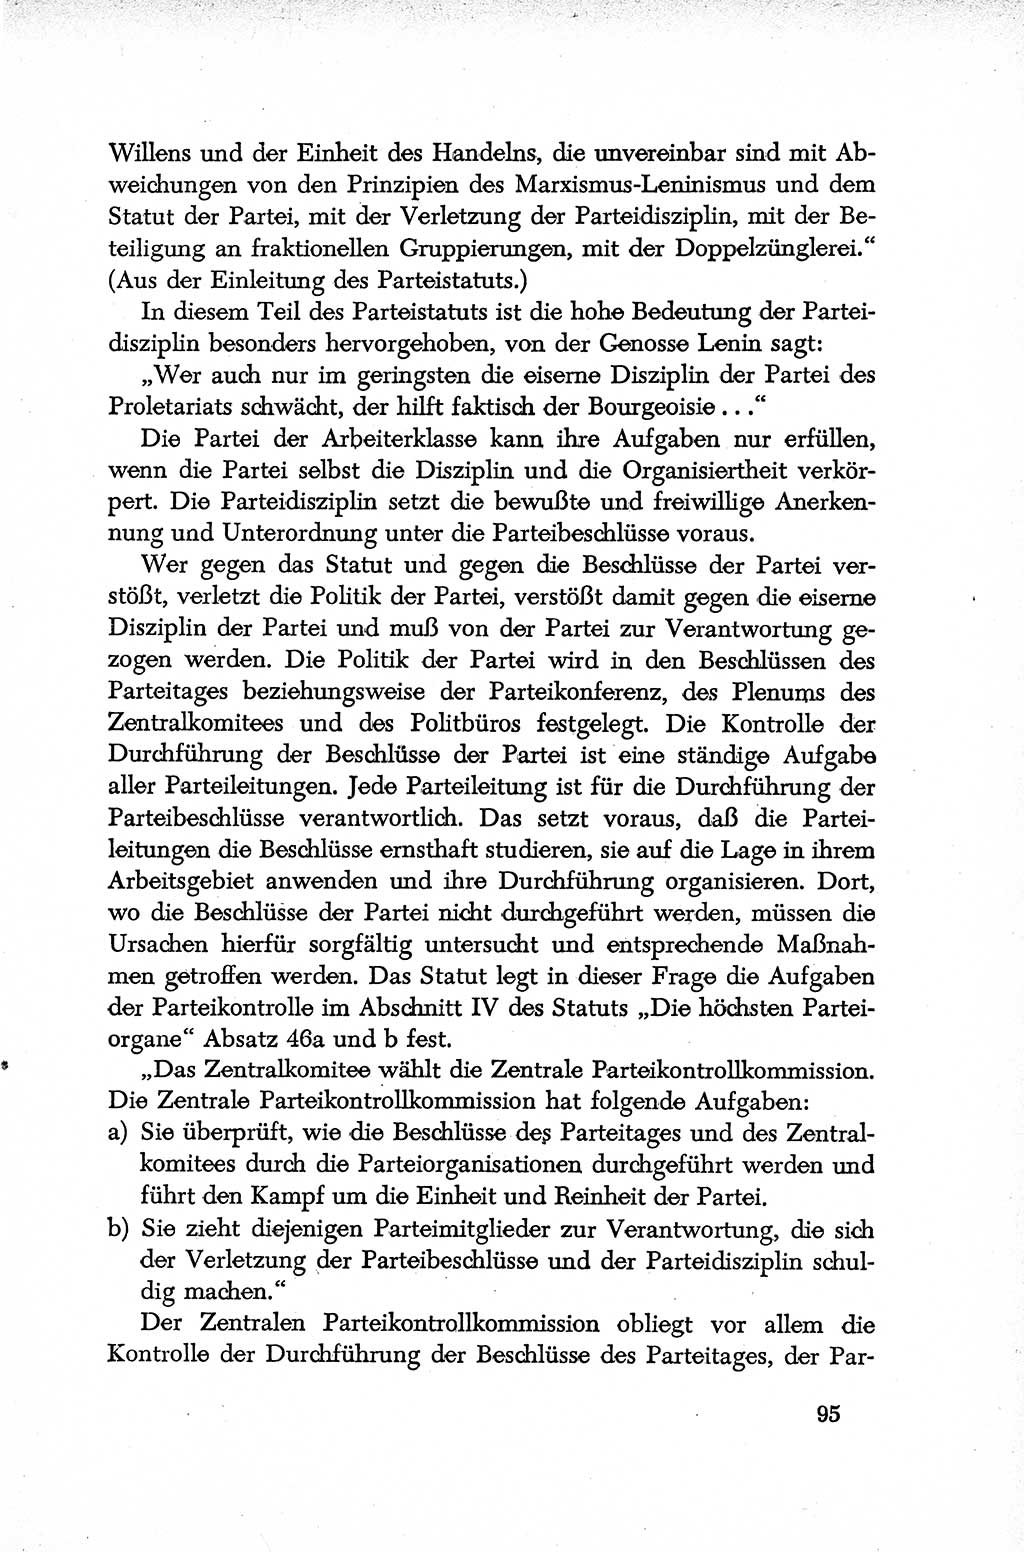 Dokumente der Sozialistischen Einheitspartei Deutschlands (SED) [Deutsche Demokratische Republik (DDR)] 1952-1953, Seite 95 (Dok. SED DDR 1952-1953, S. 95)